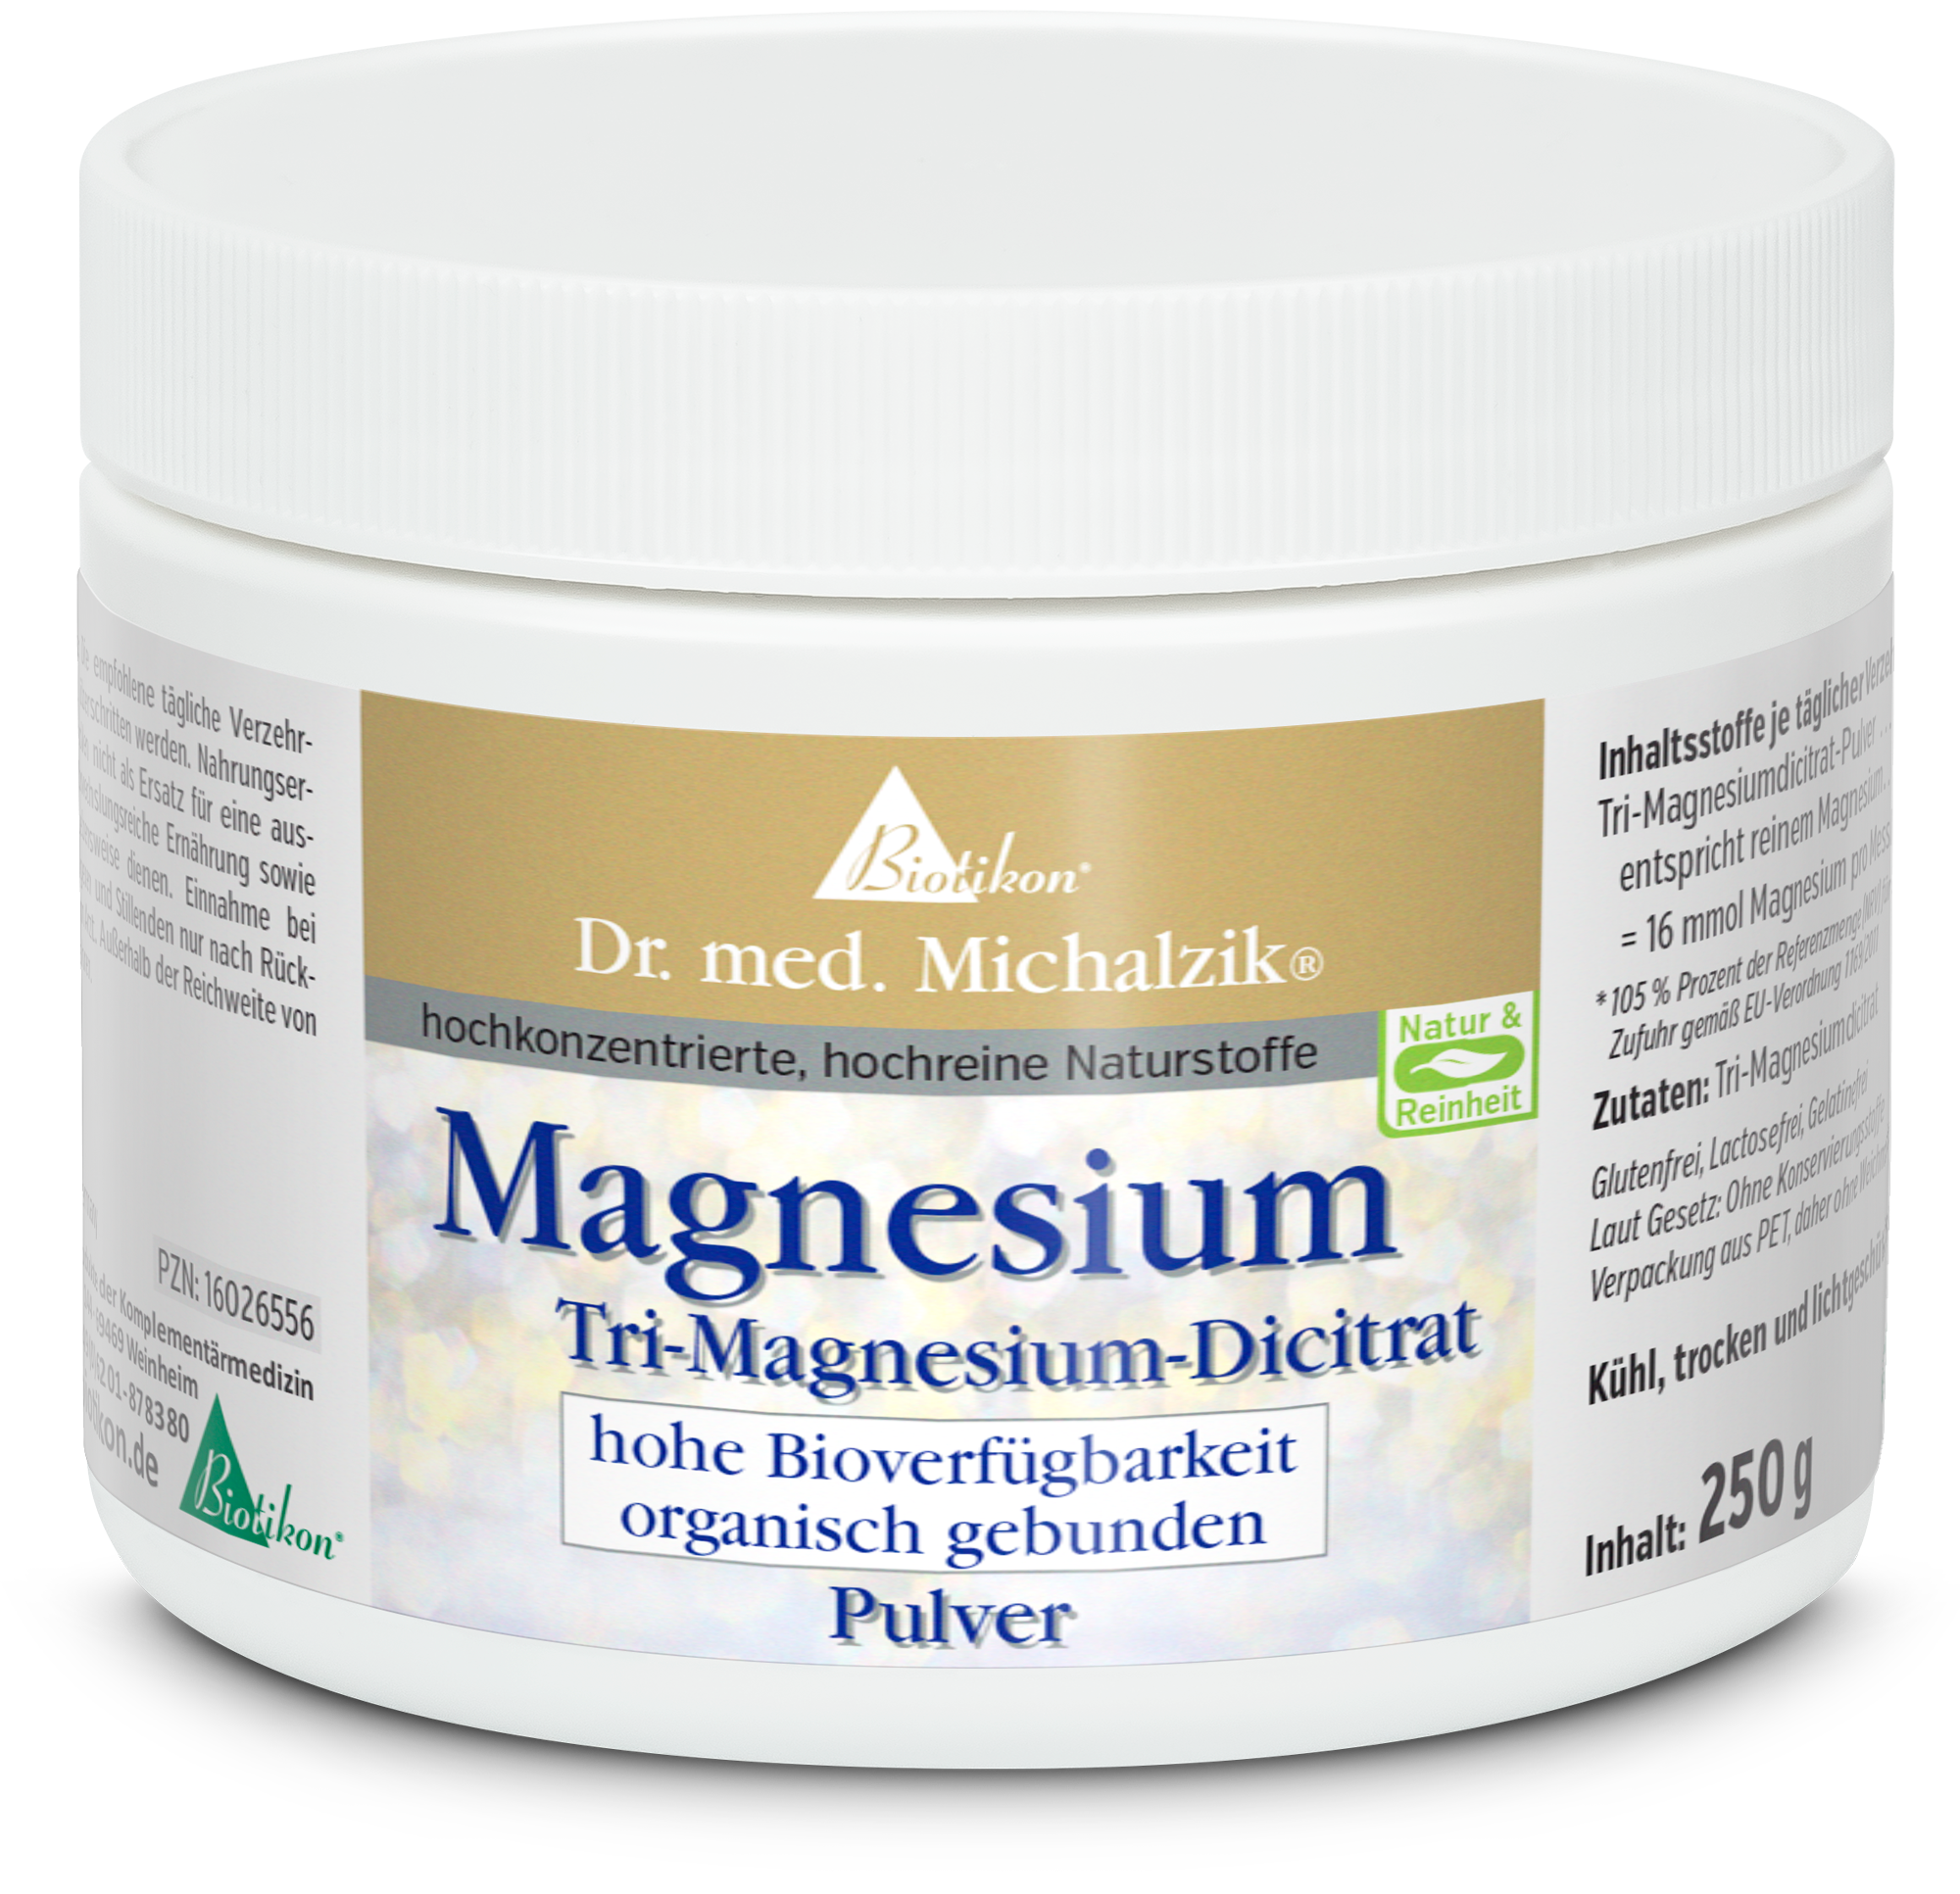 Magnesium Tri-Magnesium-Dicitrat Powder